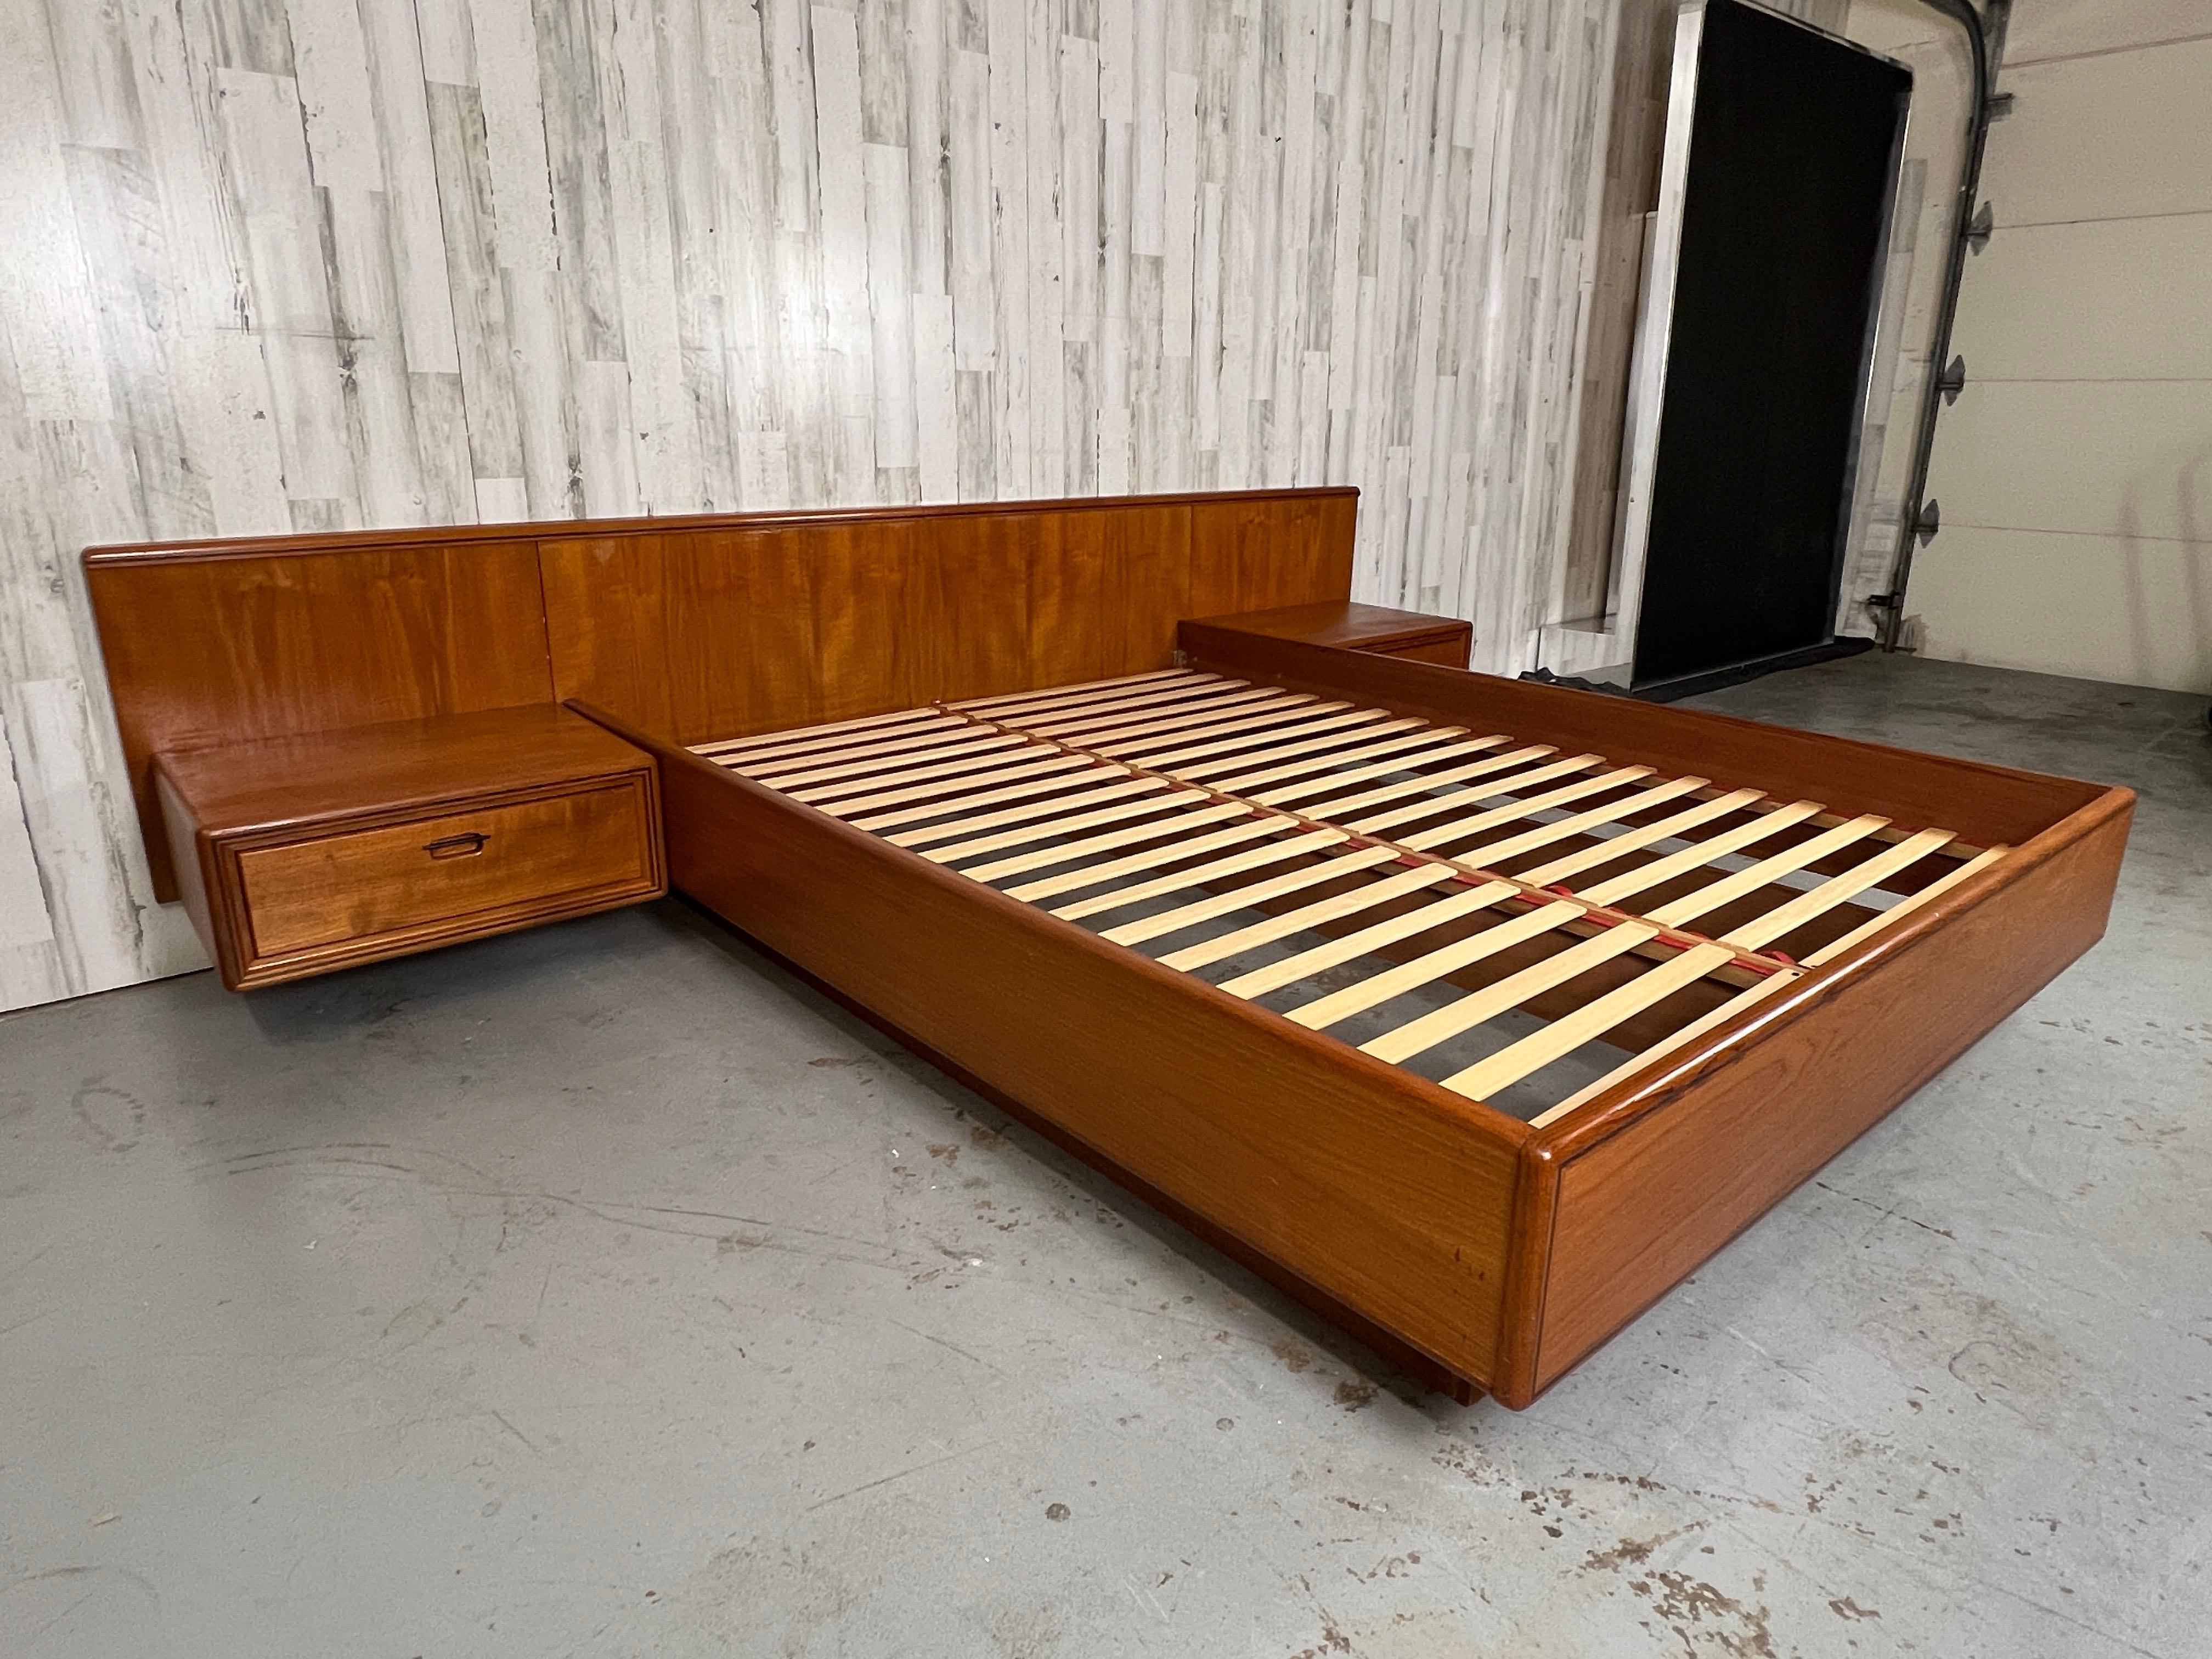 platform bed with nightstands